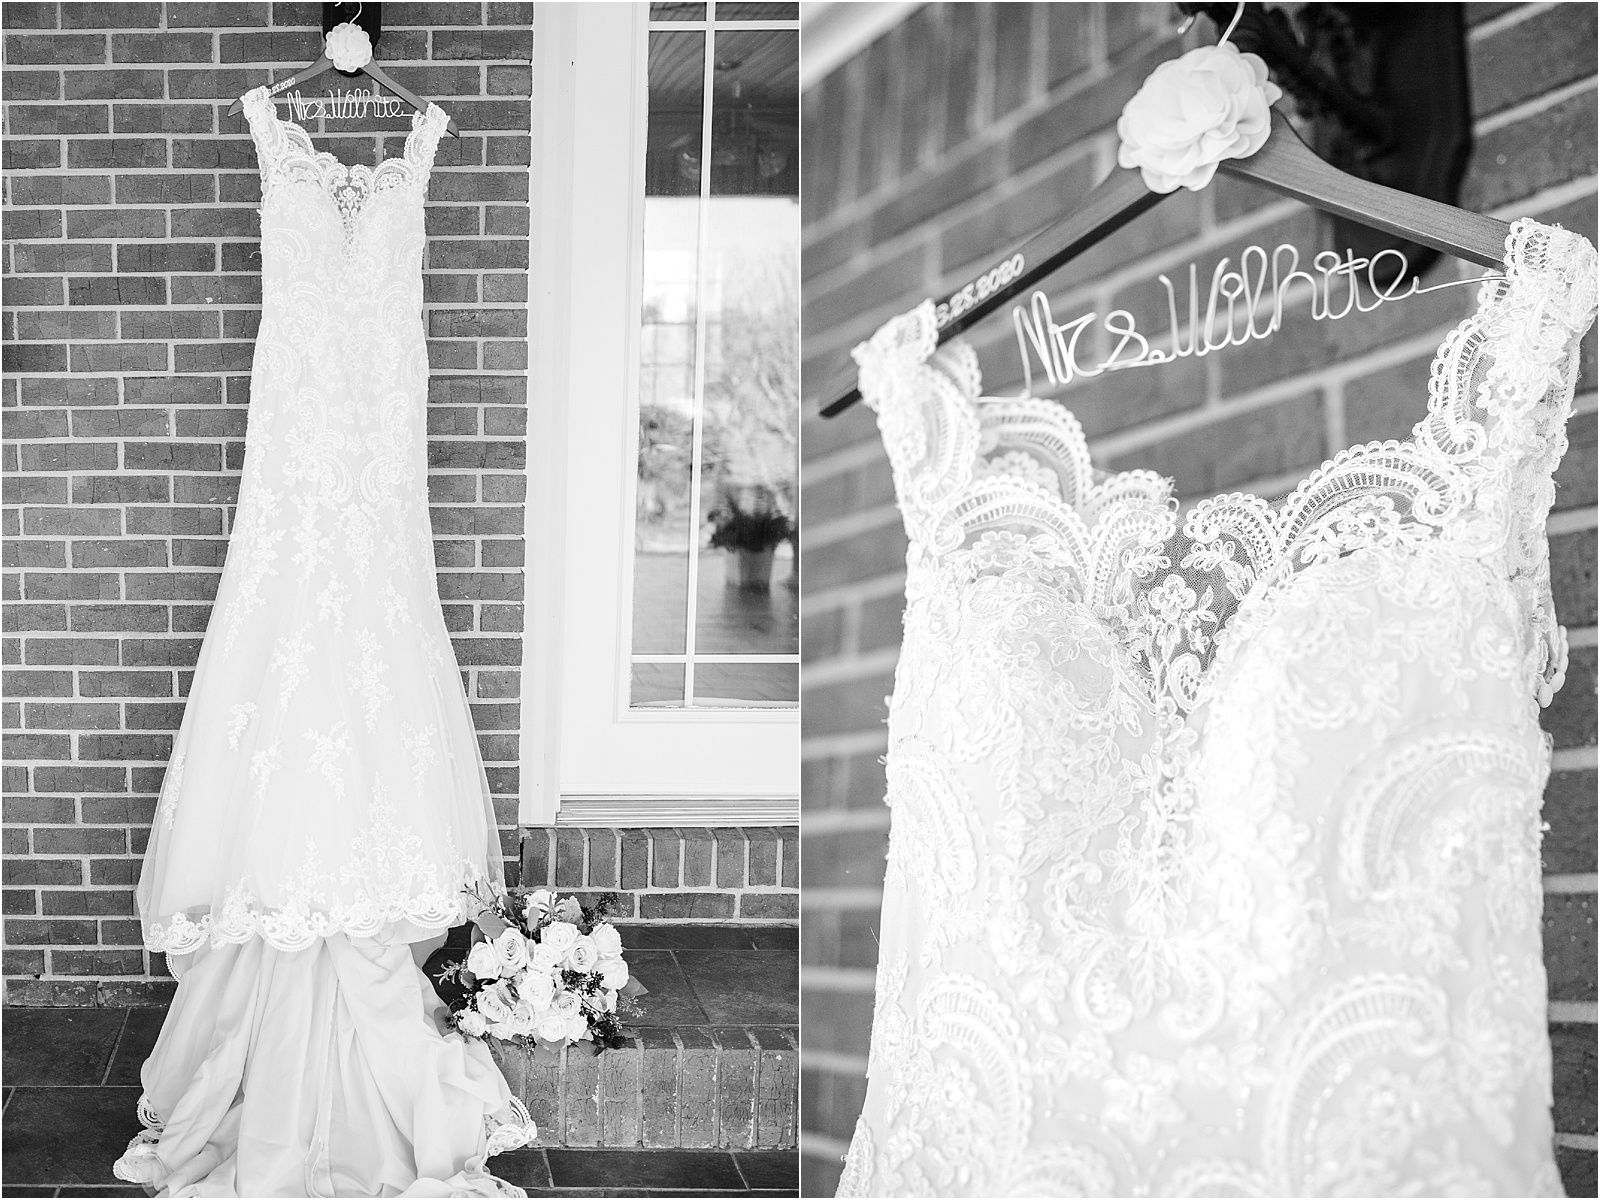 White wedding dress hanging on hanger